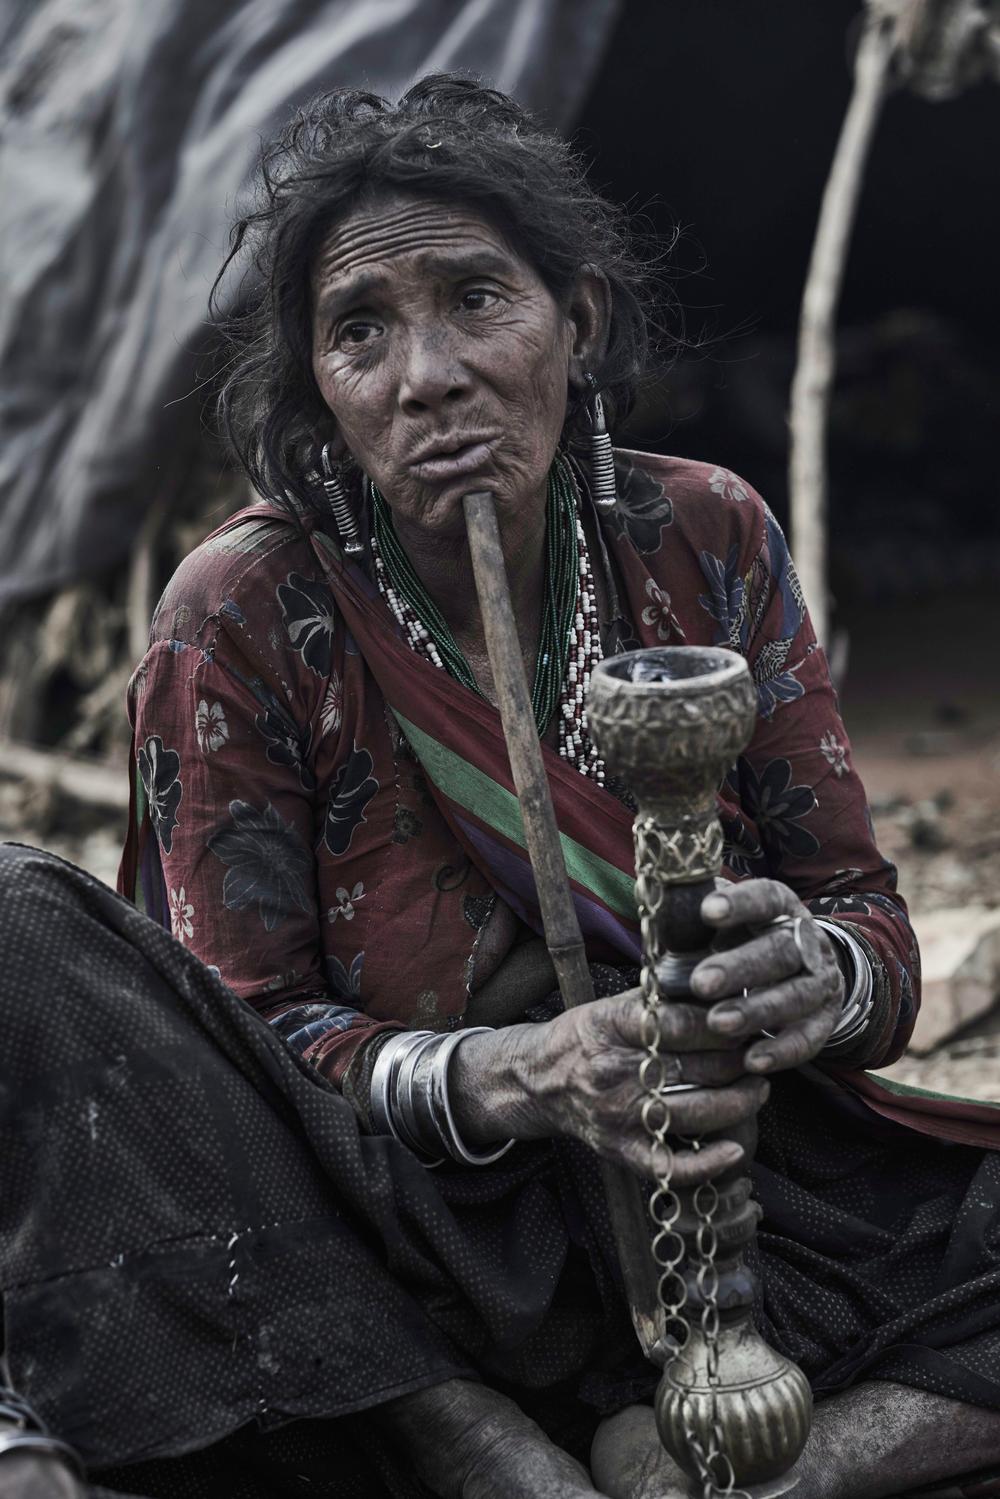 Три дня в изолированном племени кочевников Непала